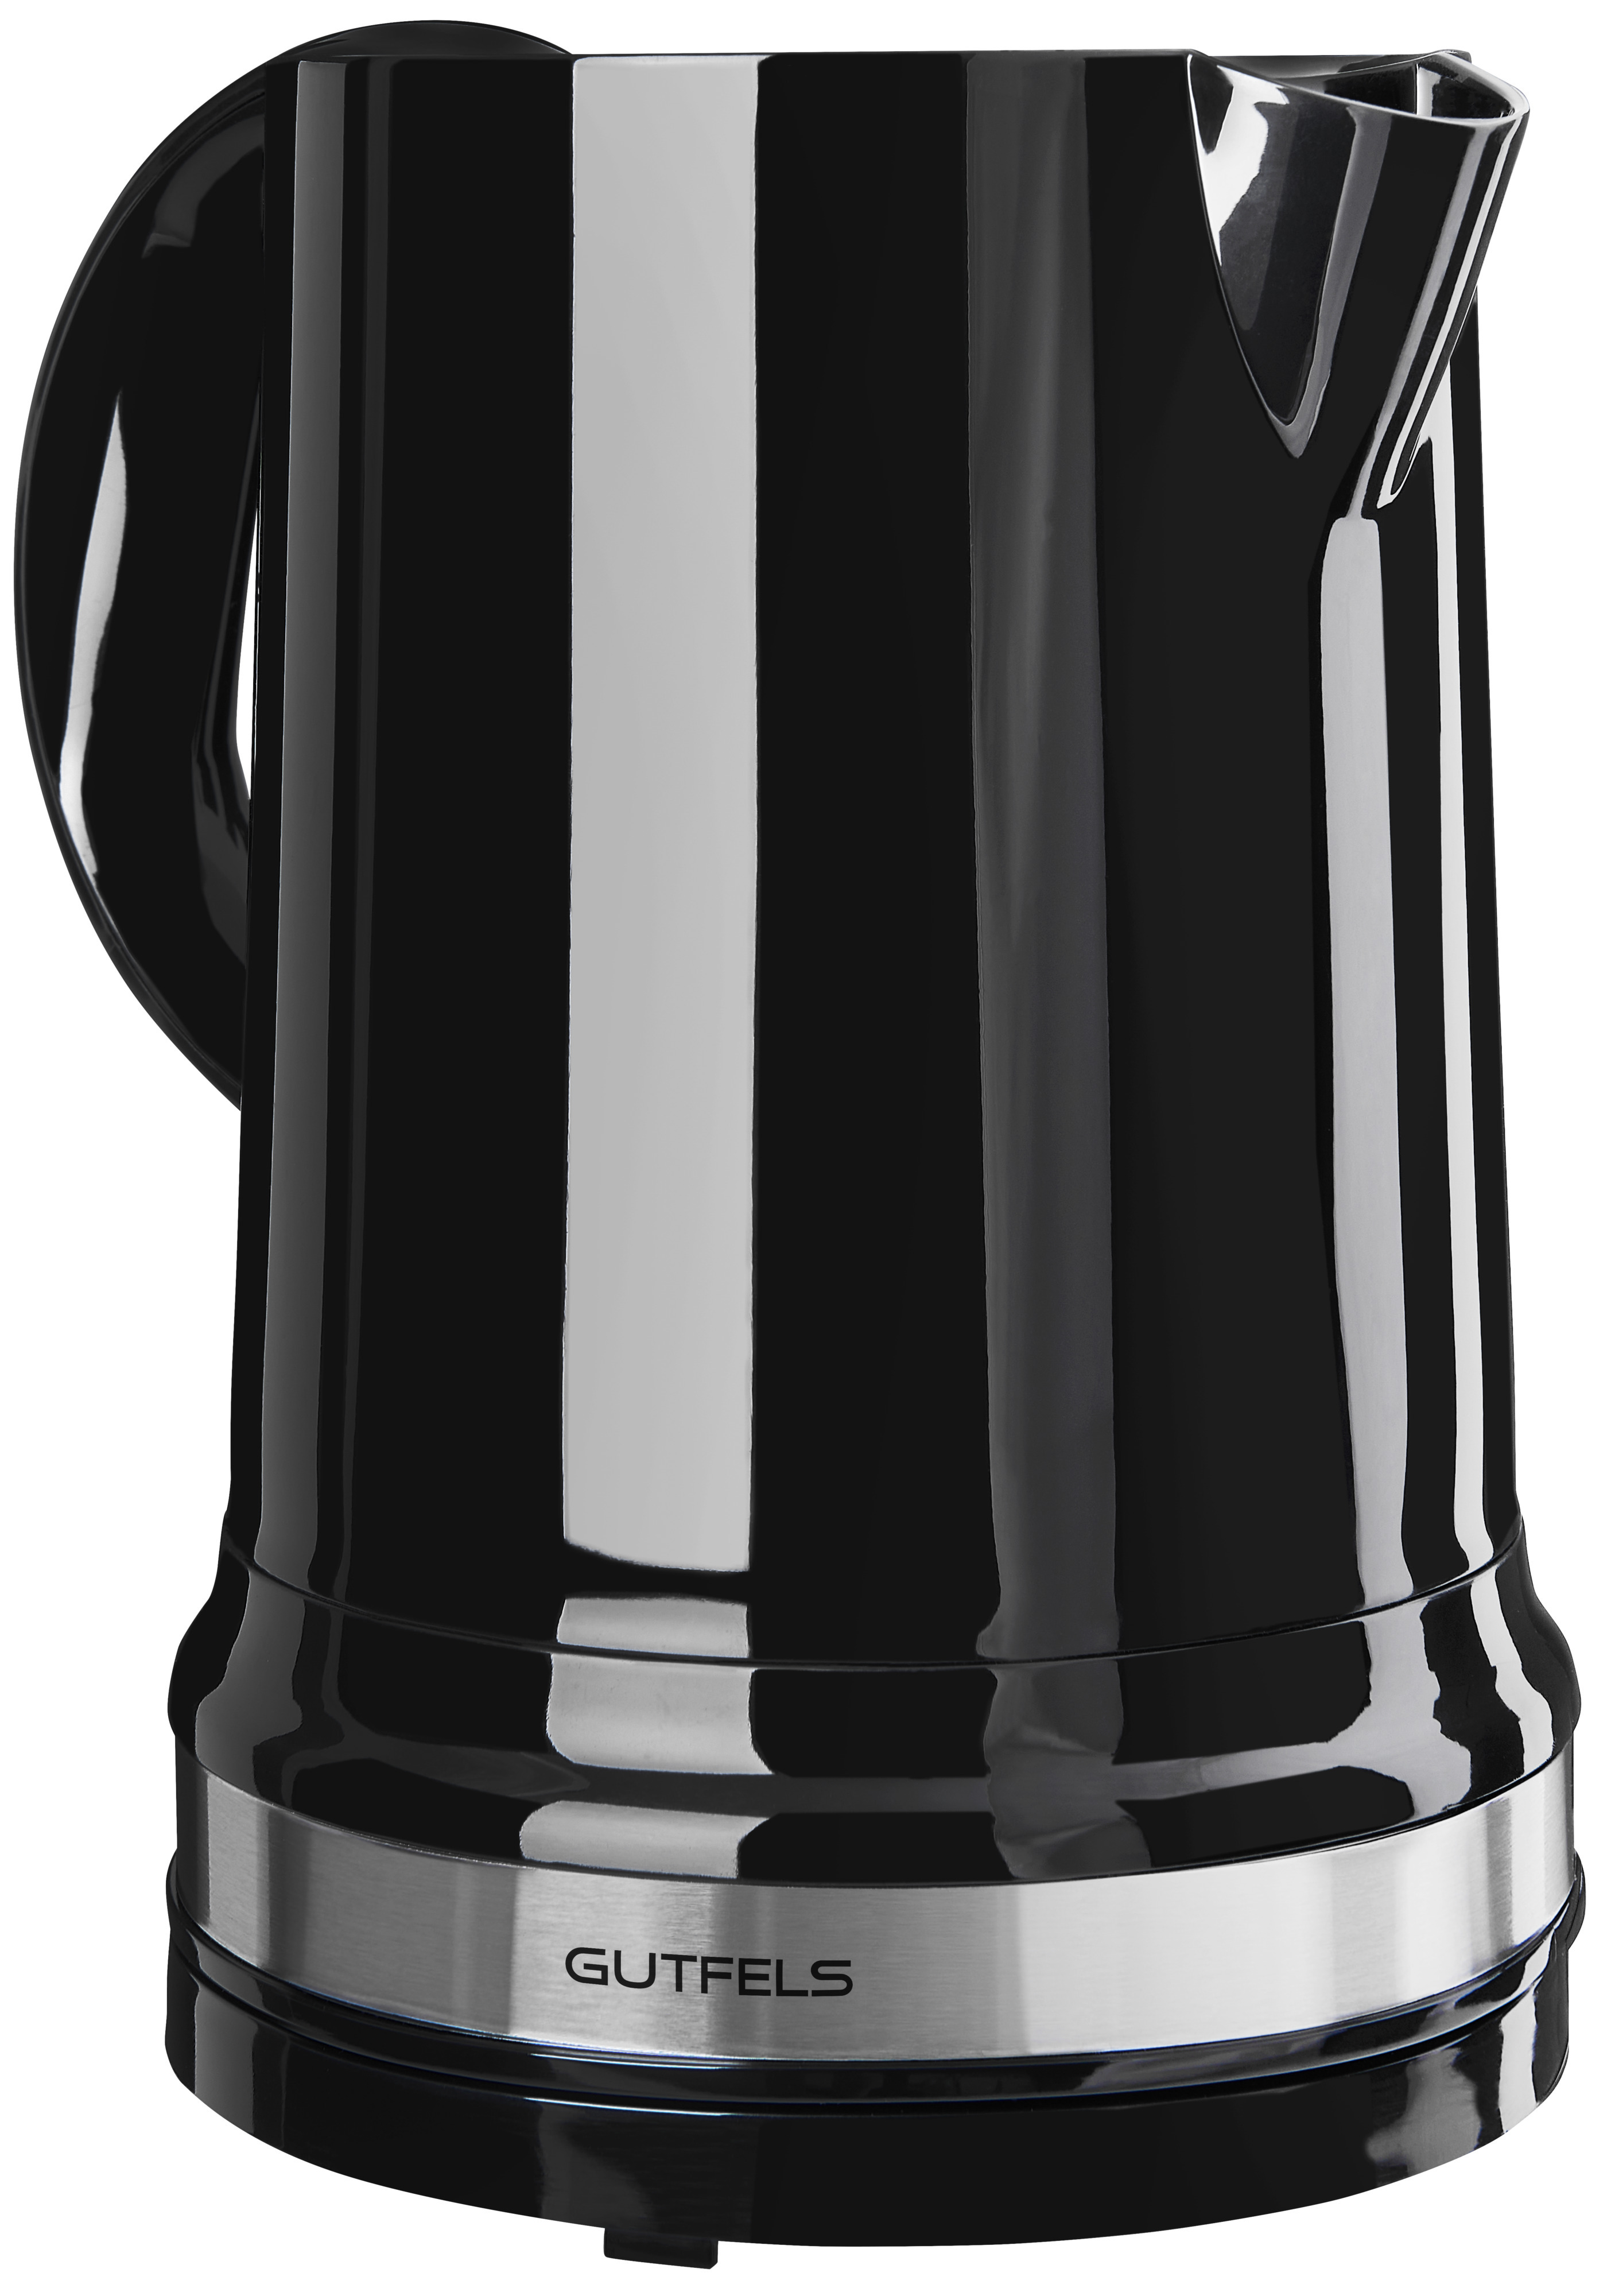  ProfiCook Wasserkocher 1L, Wasserkocher Edelstahl mit  schlichtem Design, Einhandbedienung und Wasserstandsanzeige, BPA- frei, Wasserkocher klein mit verriegelbarem Deckel, 2200 W